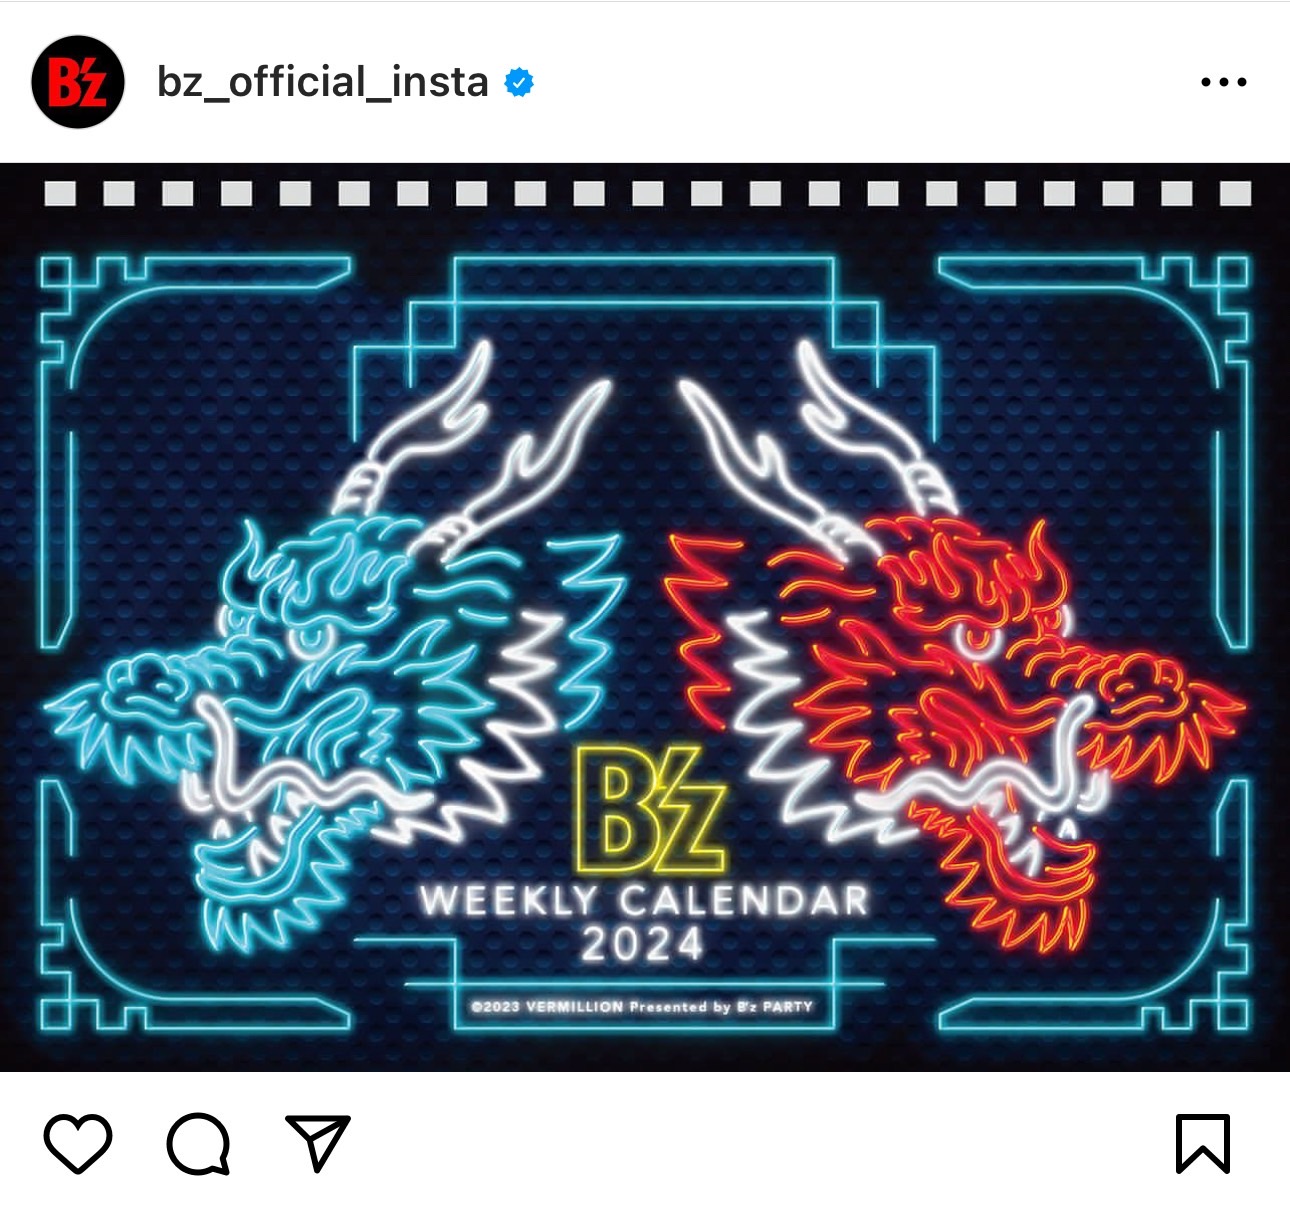 二匹の竜がデザインされた「B’zカレンダー2024」の卓上版カレンダーの表紙の画像